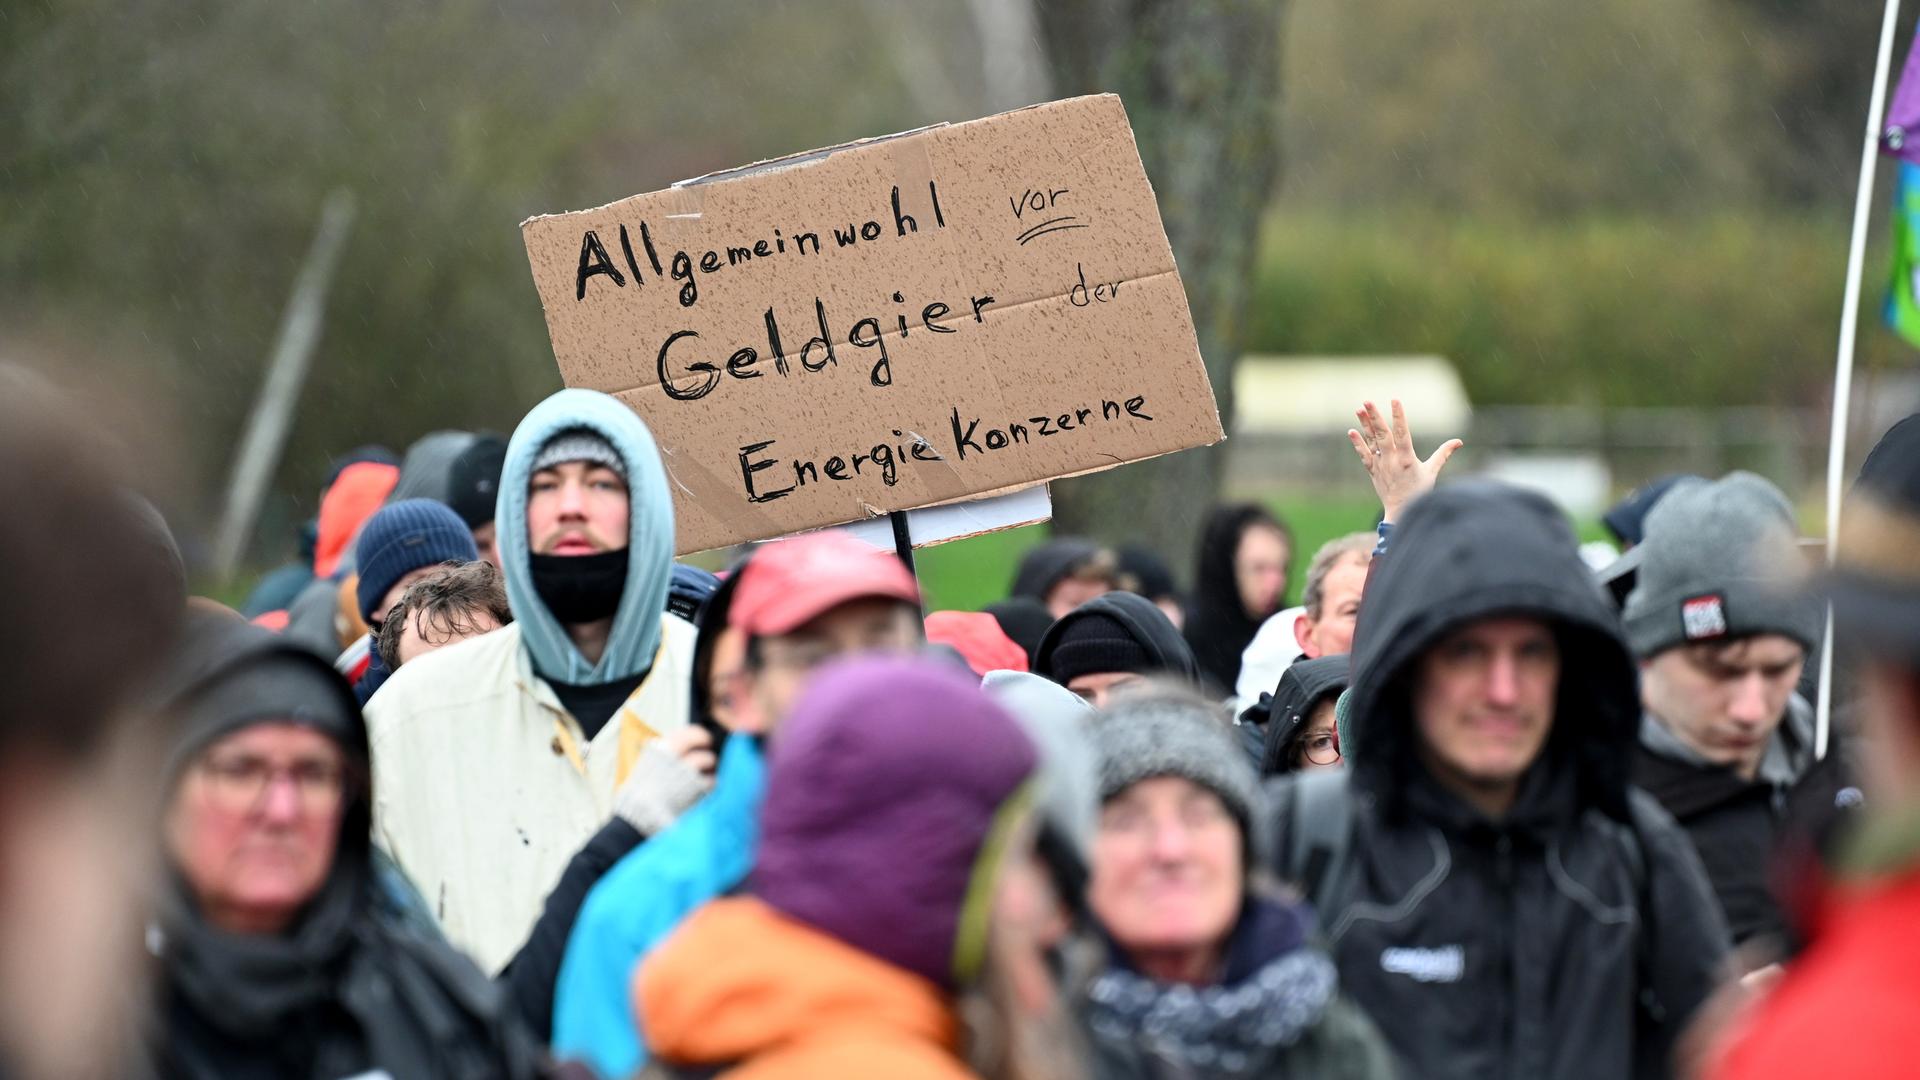 Demonstranten halten ein Schild mit der Aufschrift "Allgemeinwohl vor Geldgier der Energiekonzerne". Die Demonstration von Klimaaktivisten bei Lützerath findet unter dem Motto "Räumung verhindern! Für Klimagerechtigkeit" statt.